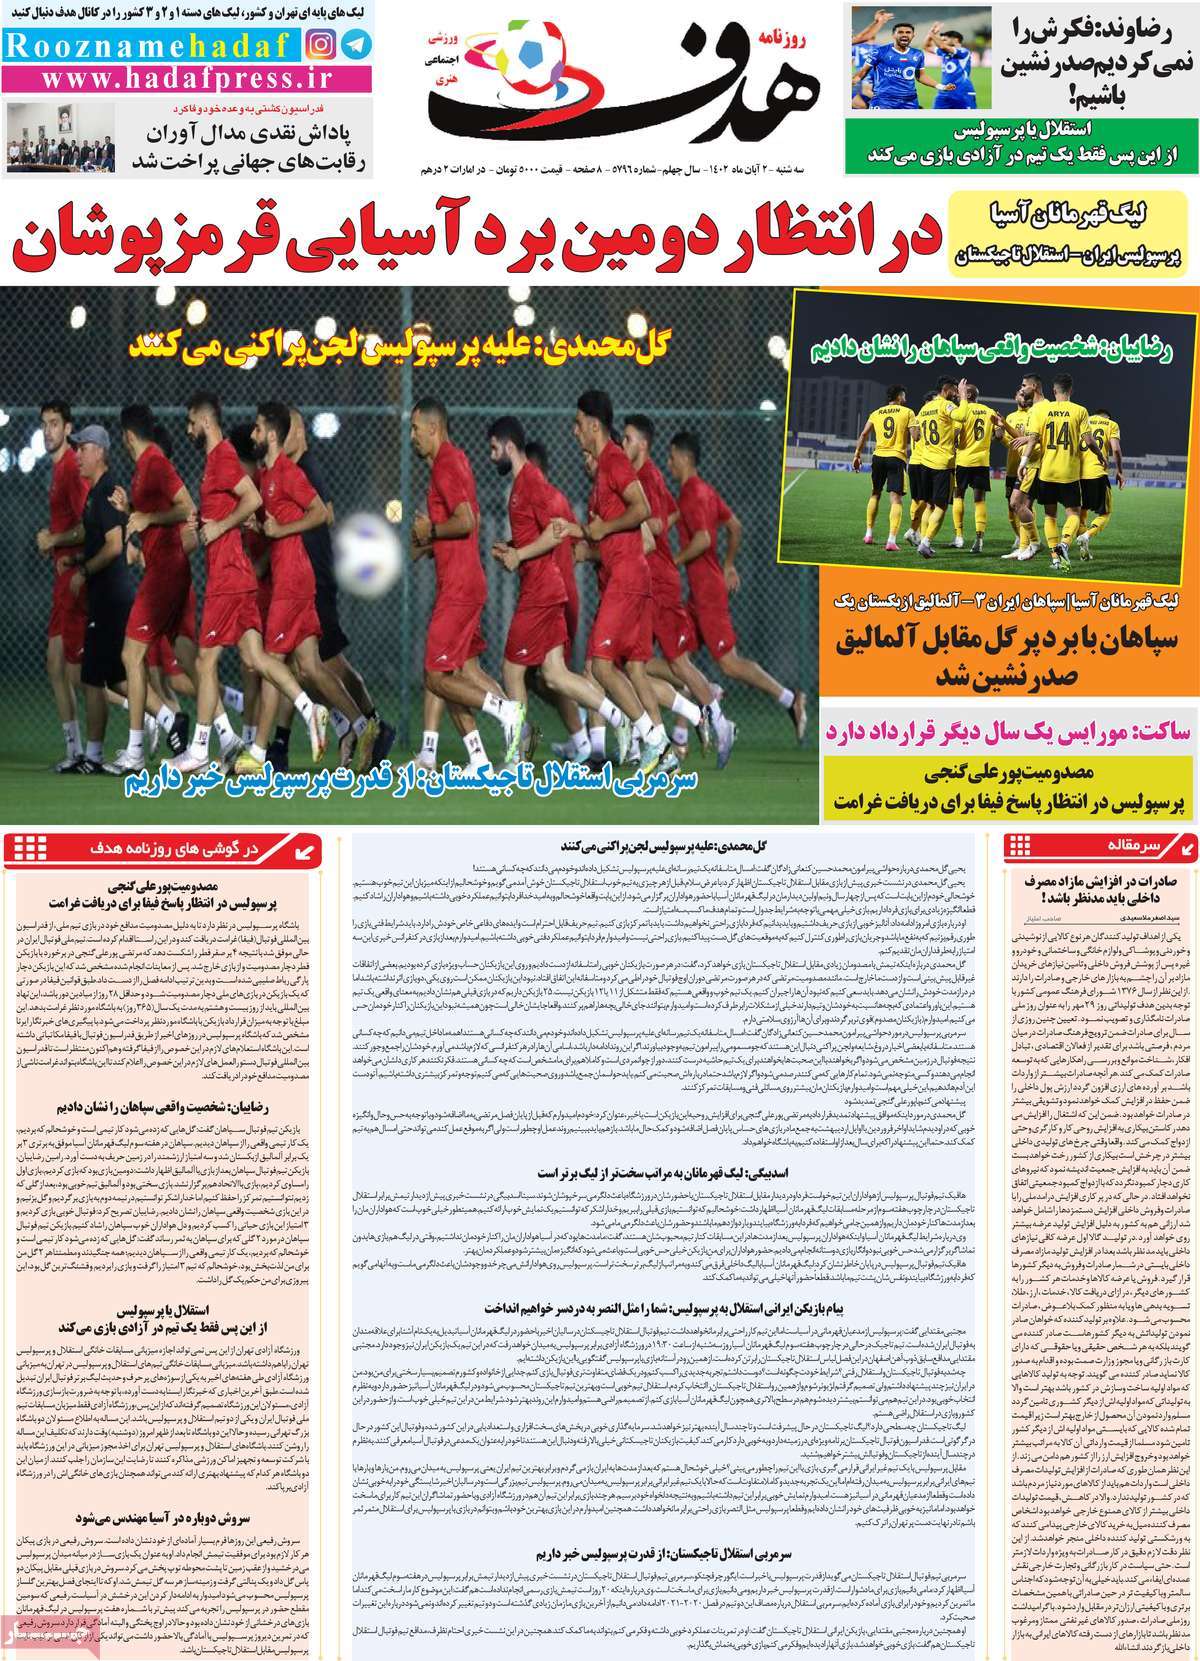 صفحه اول روزنامه های ورزشی امروز / روزنامه هدف